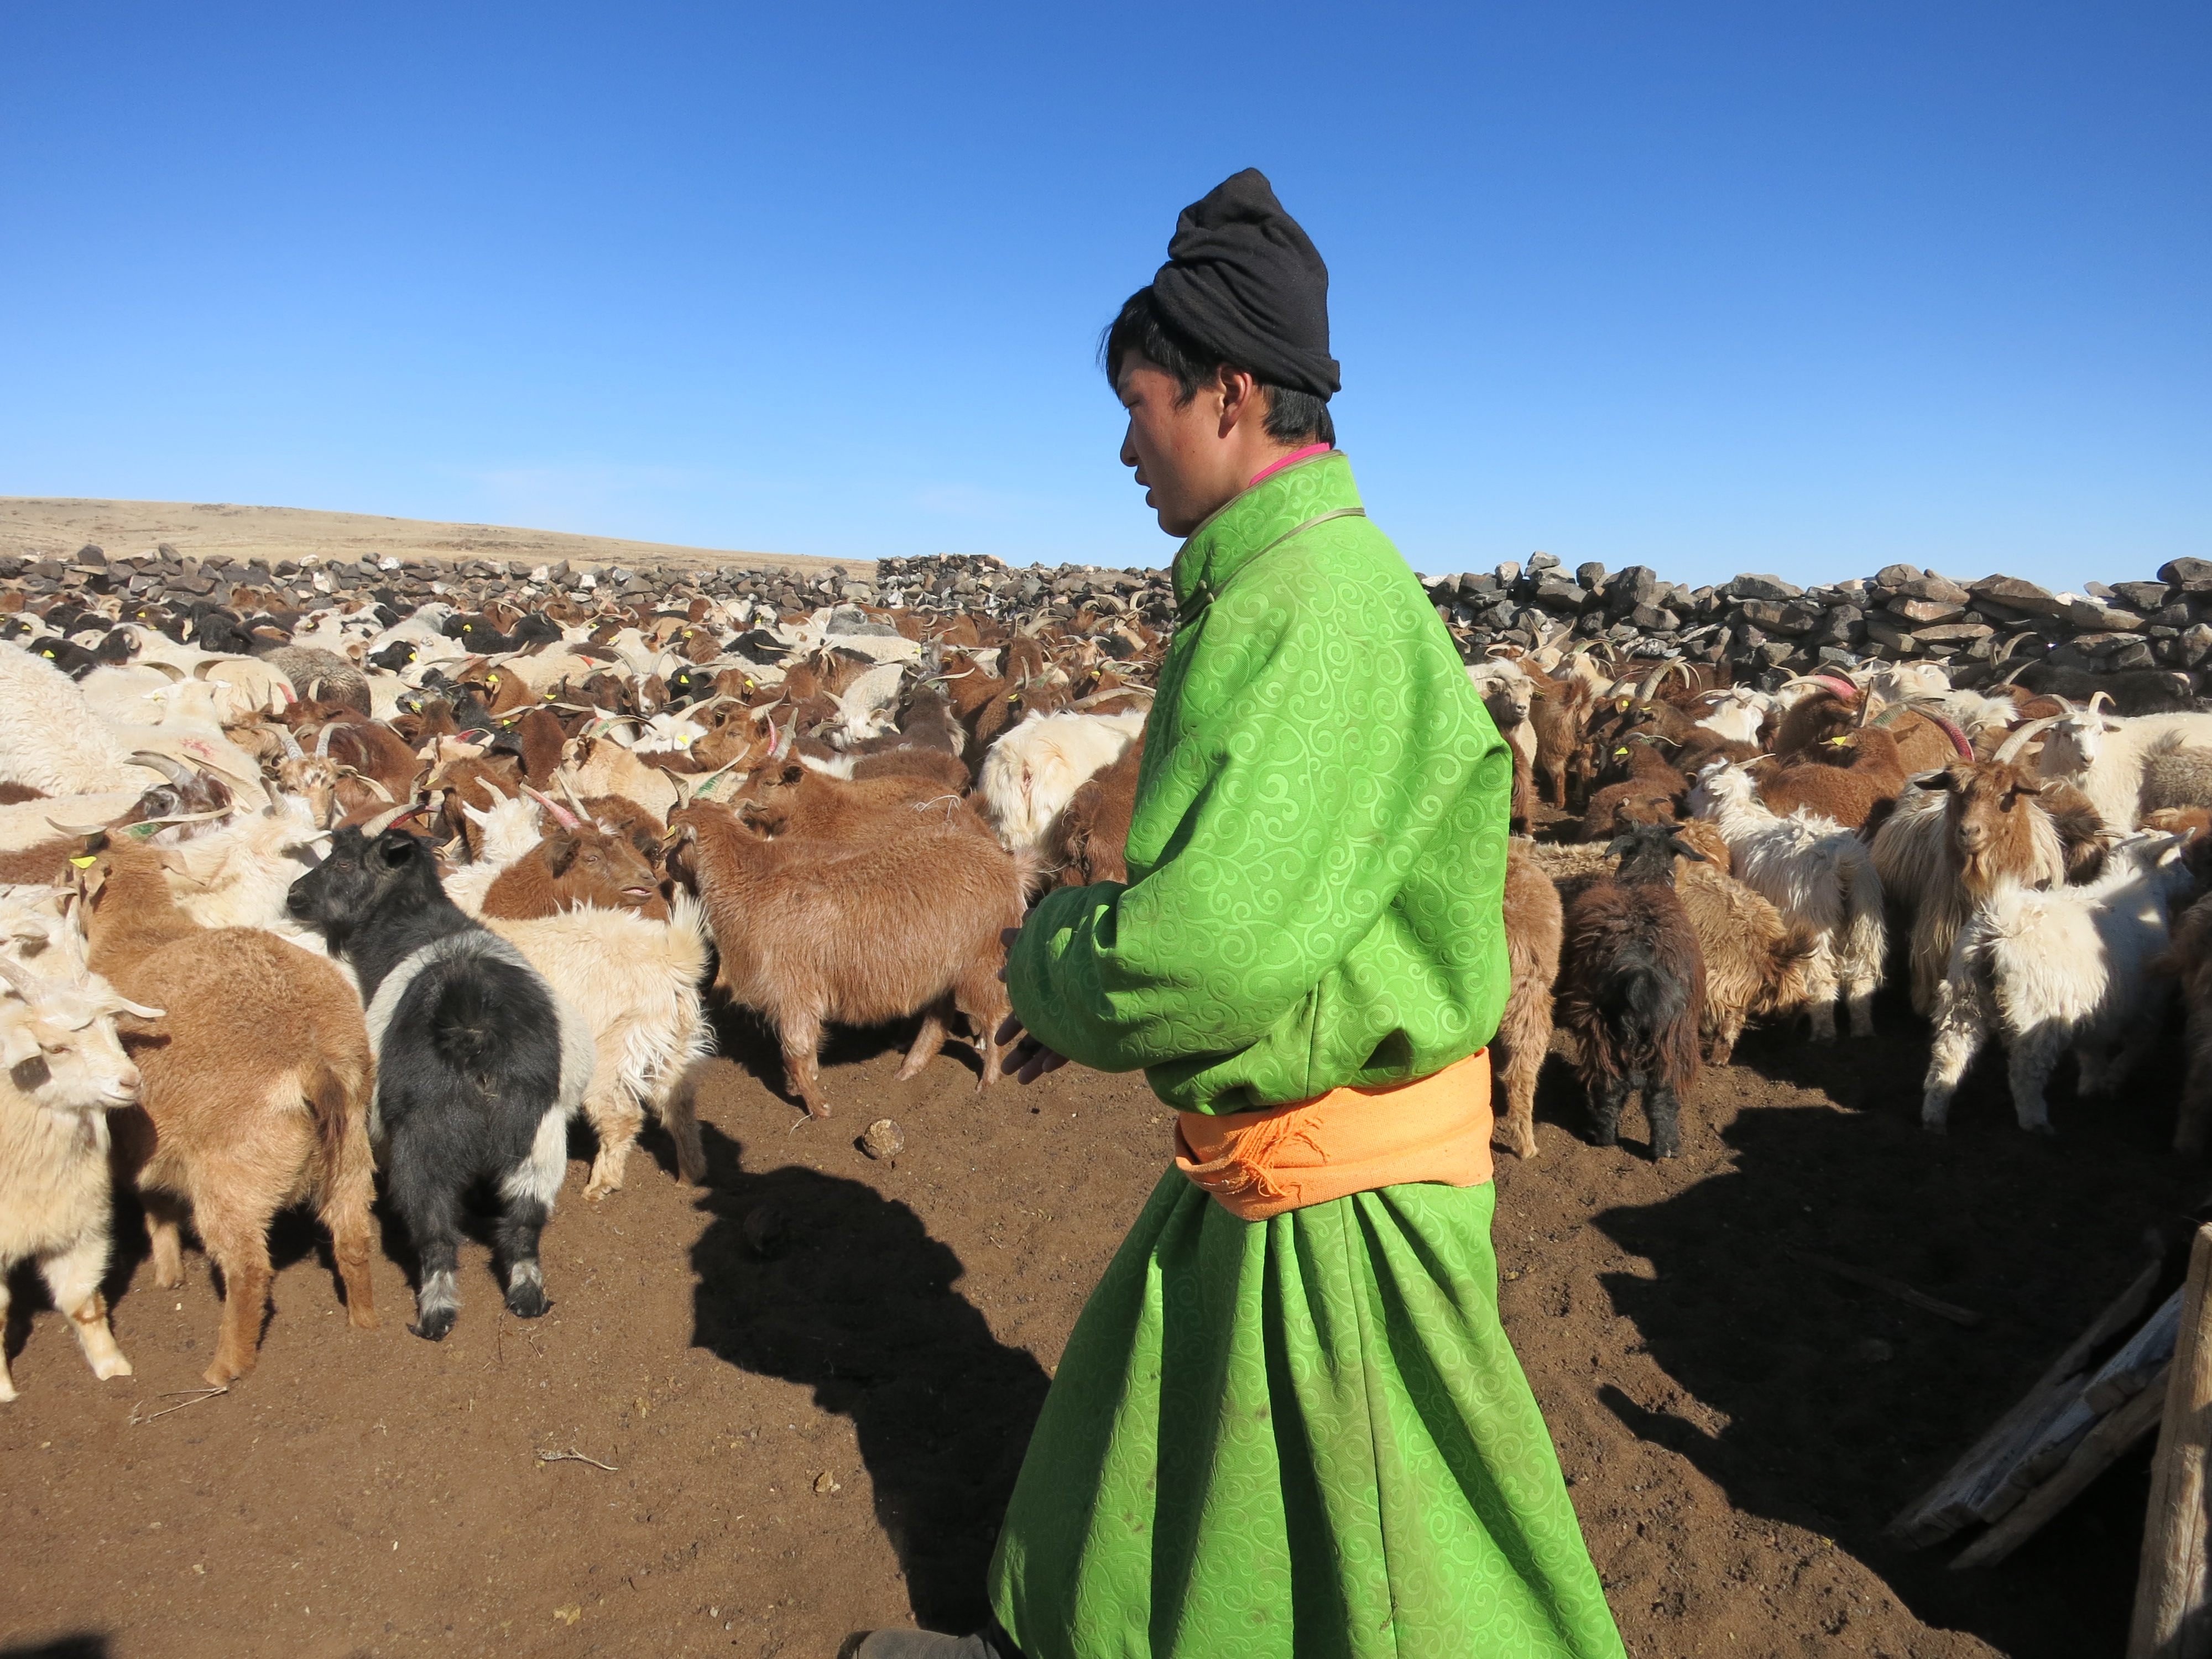 Joven vestido con el atuendo tradicional de trabajo color verde limón, llevando un rebaño de cabras.